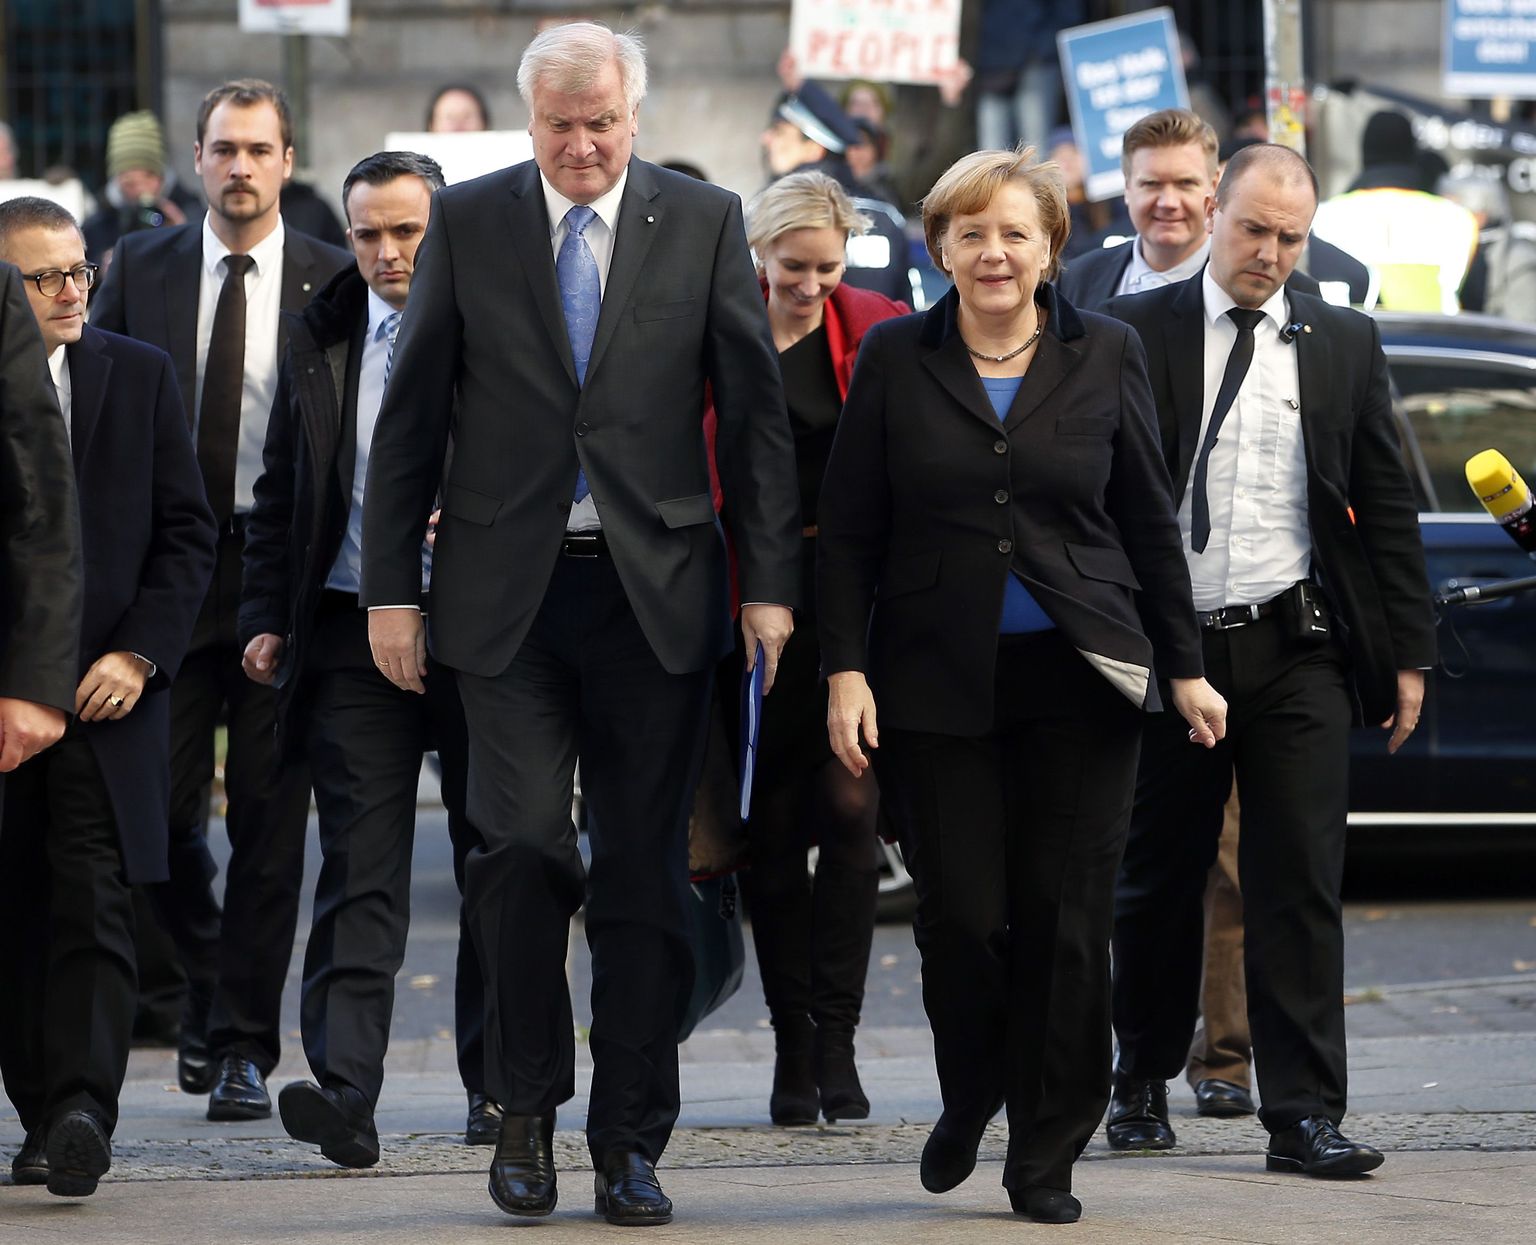 Saksamaa kantsler Angela Merkel (keskel paremal) ja Kristlik-sotsiaalse liidu esimees Horst Seehofer (keskel vasakul)saabuvad kõnelustele.